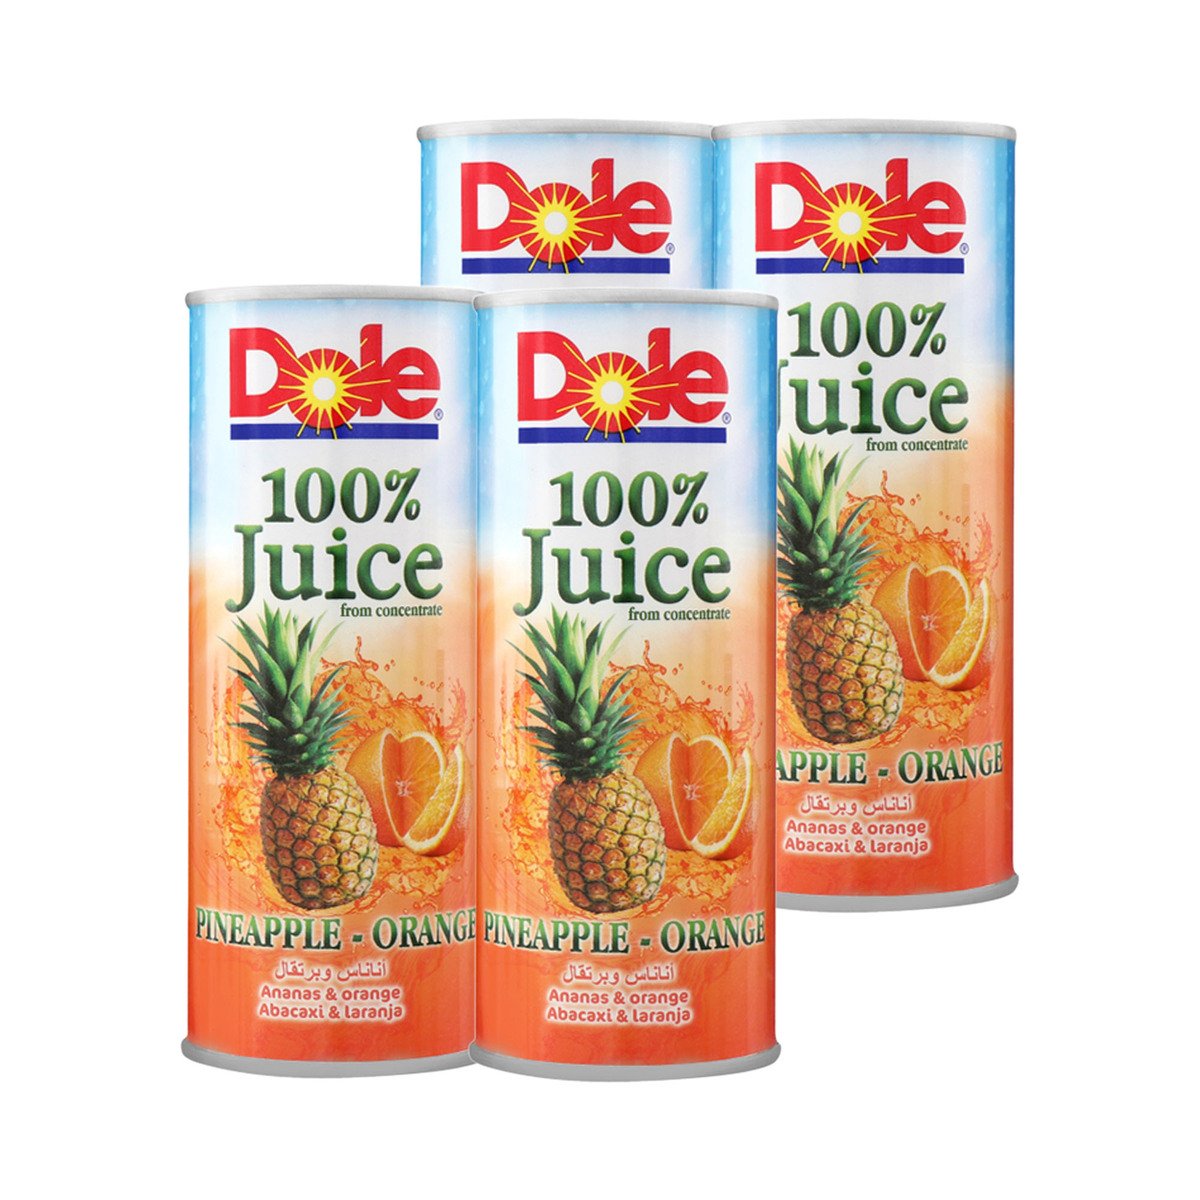 Dole Pineapple- Orange Juice Value Pack 4 x 250 ml